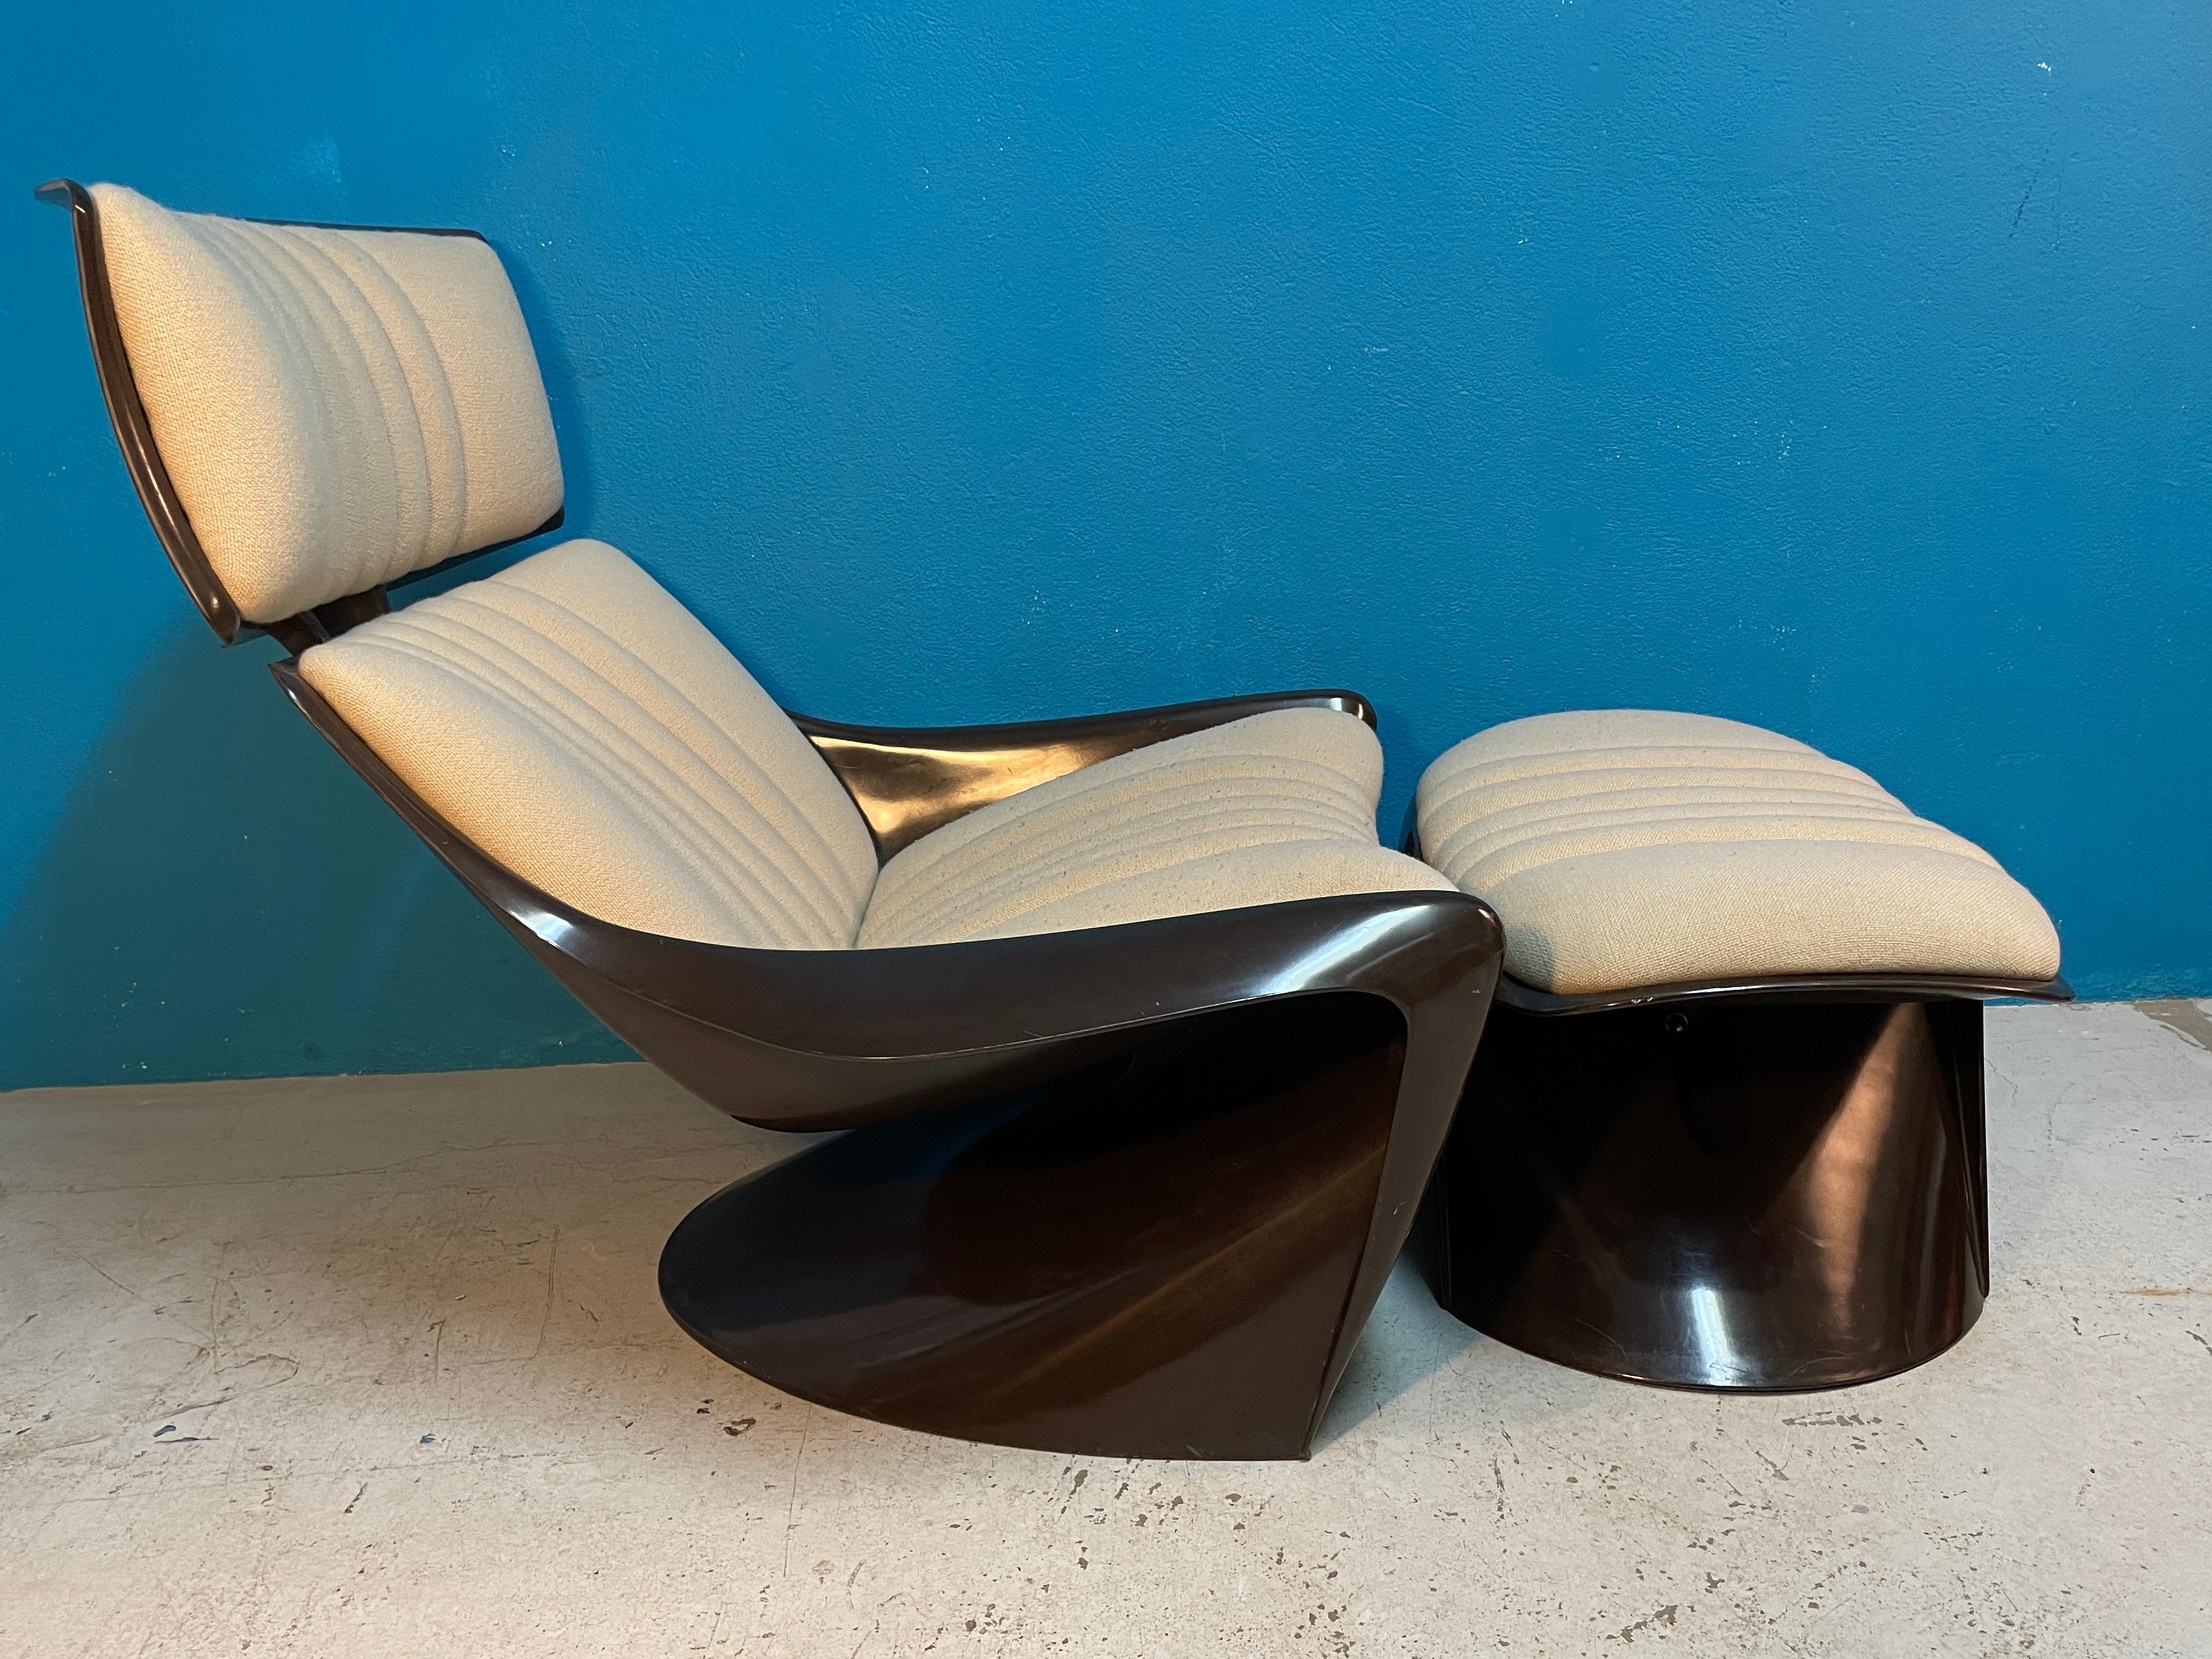 La chaise longue President Meteor 265 a été conçue par le roi du design de l'ère spatiale, le designer de meubles danois Steen Ostergaard, en 1968. La chaise est également connue sous le nom de 